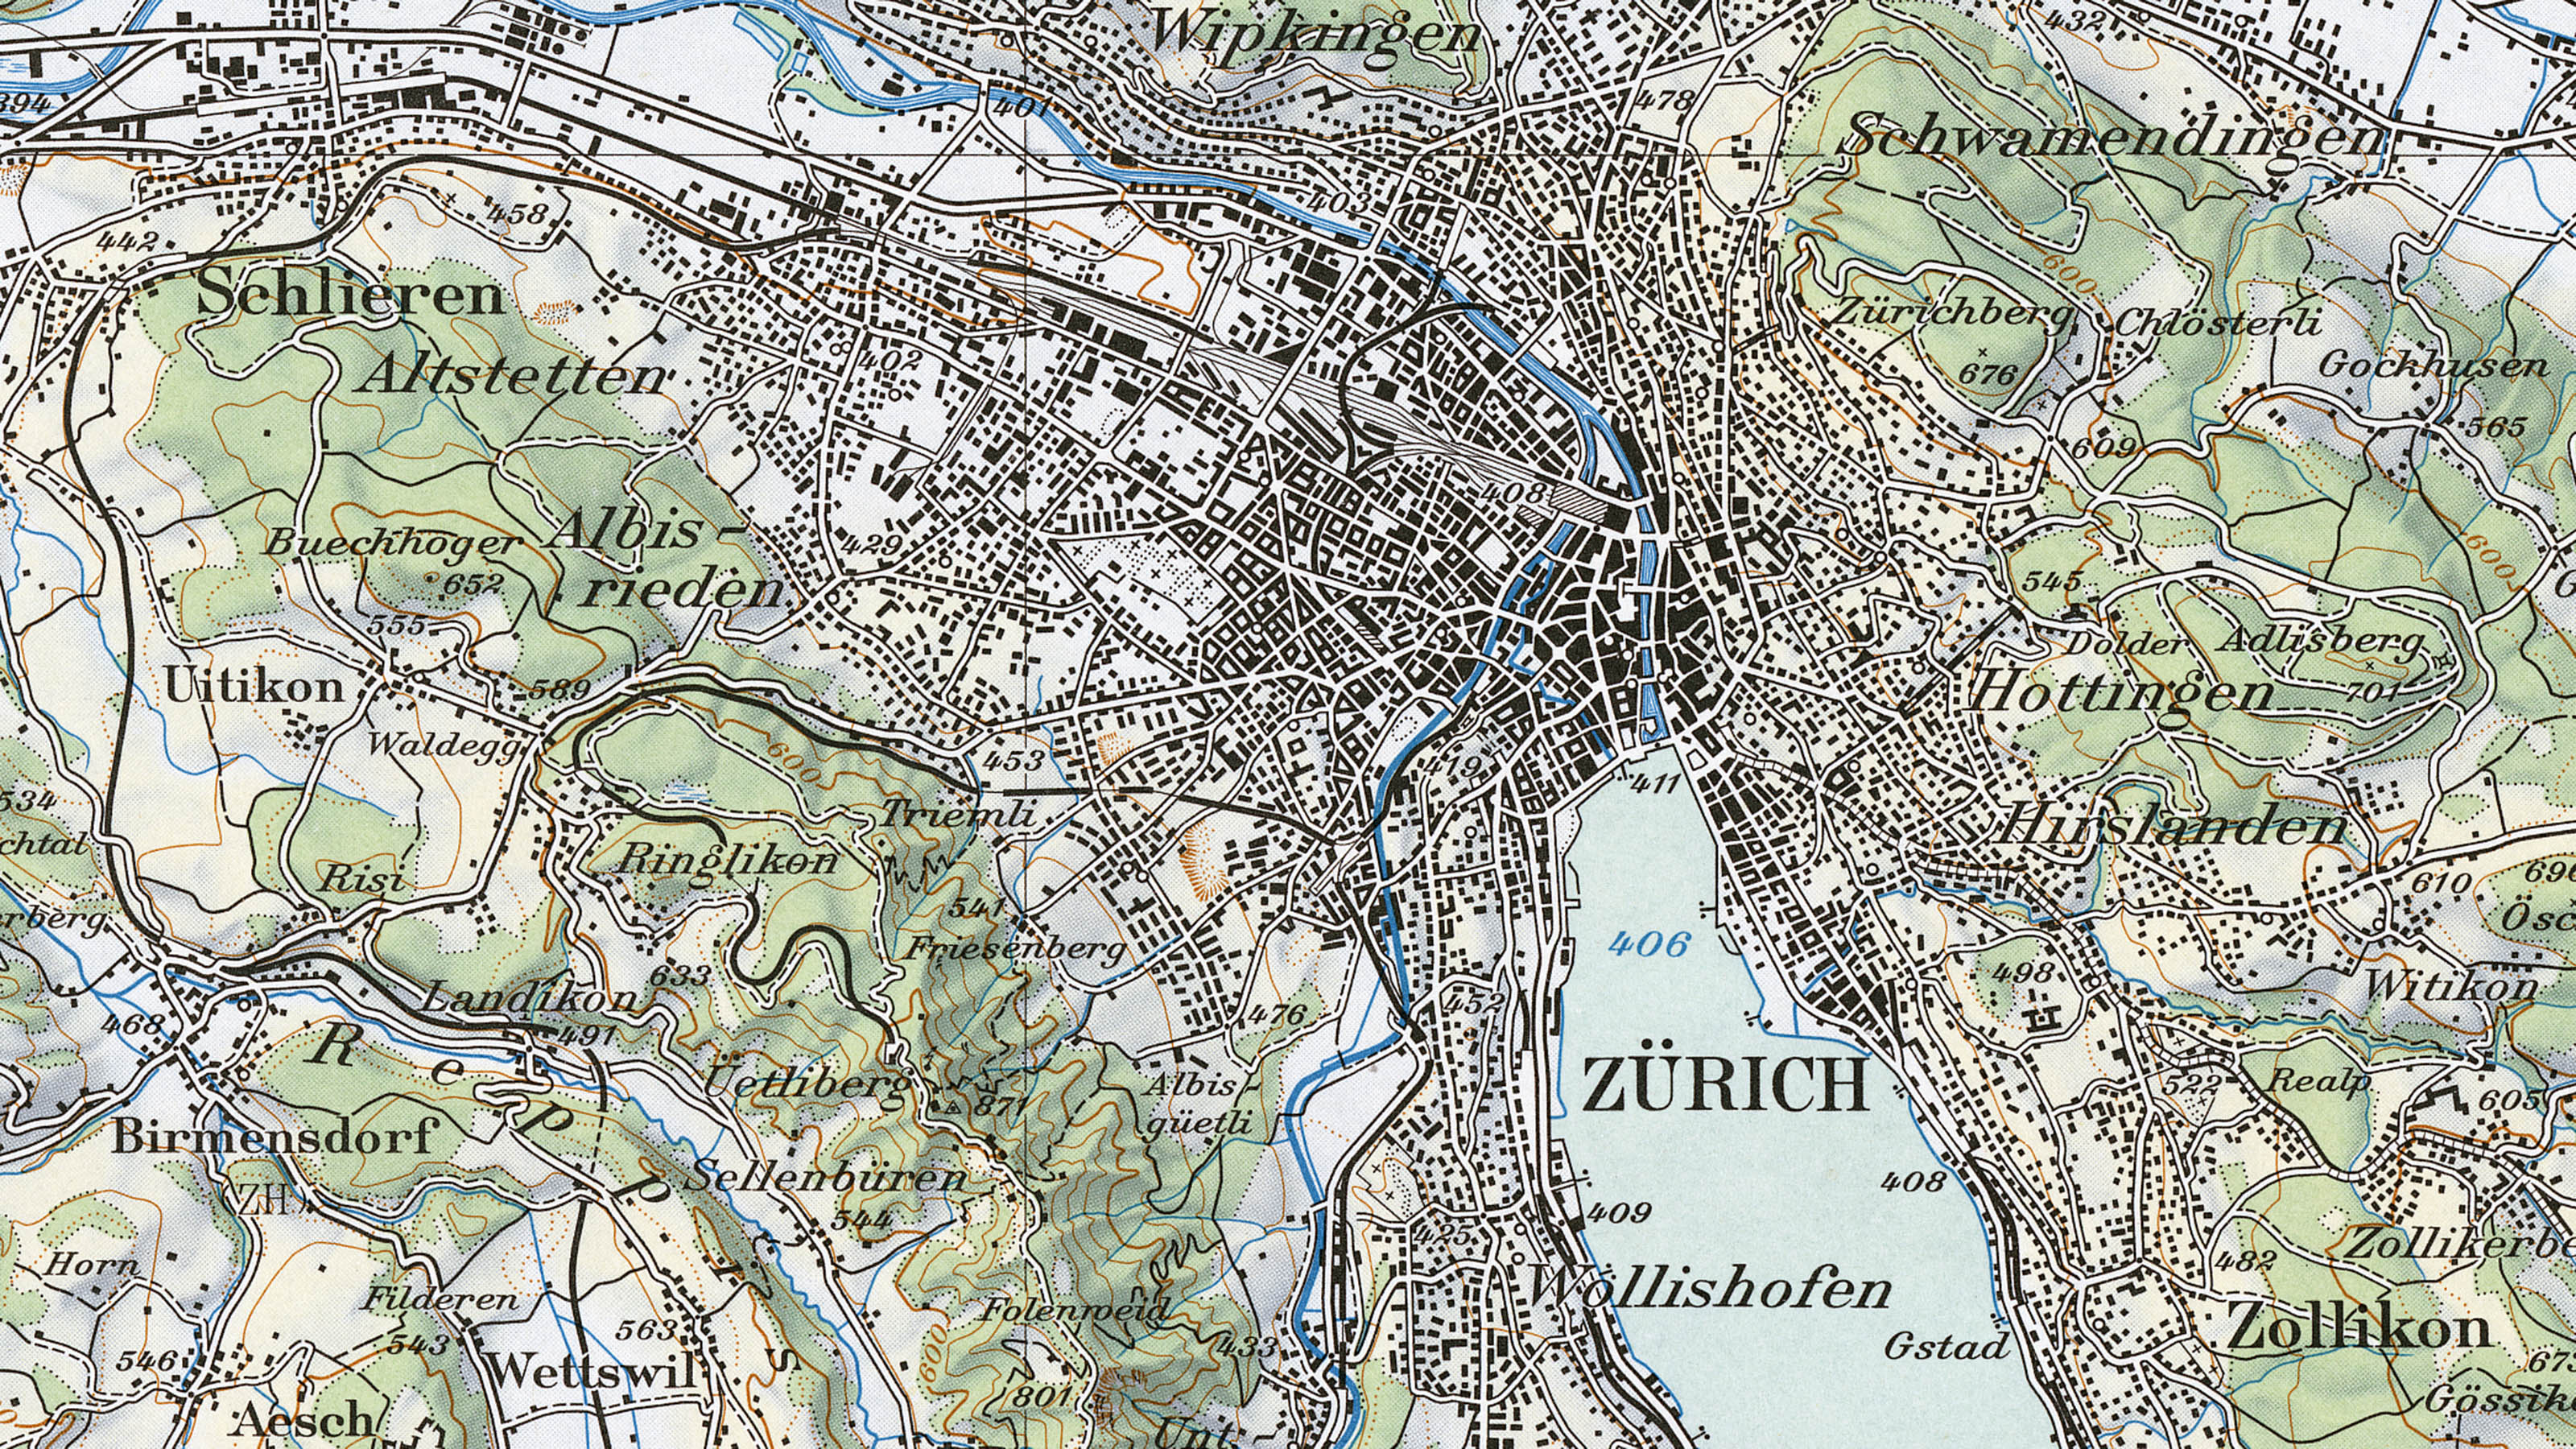 Extrait de la carte nationale à l'échelle 1:100 000 de 1959. L'extrait montre le centre de Zurich sur la carte multicolore.